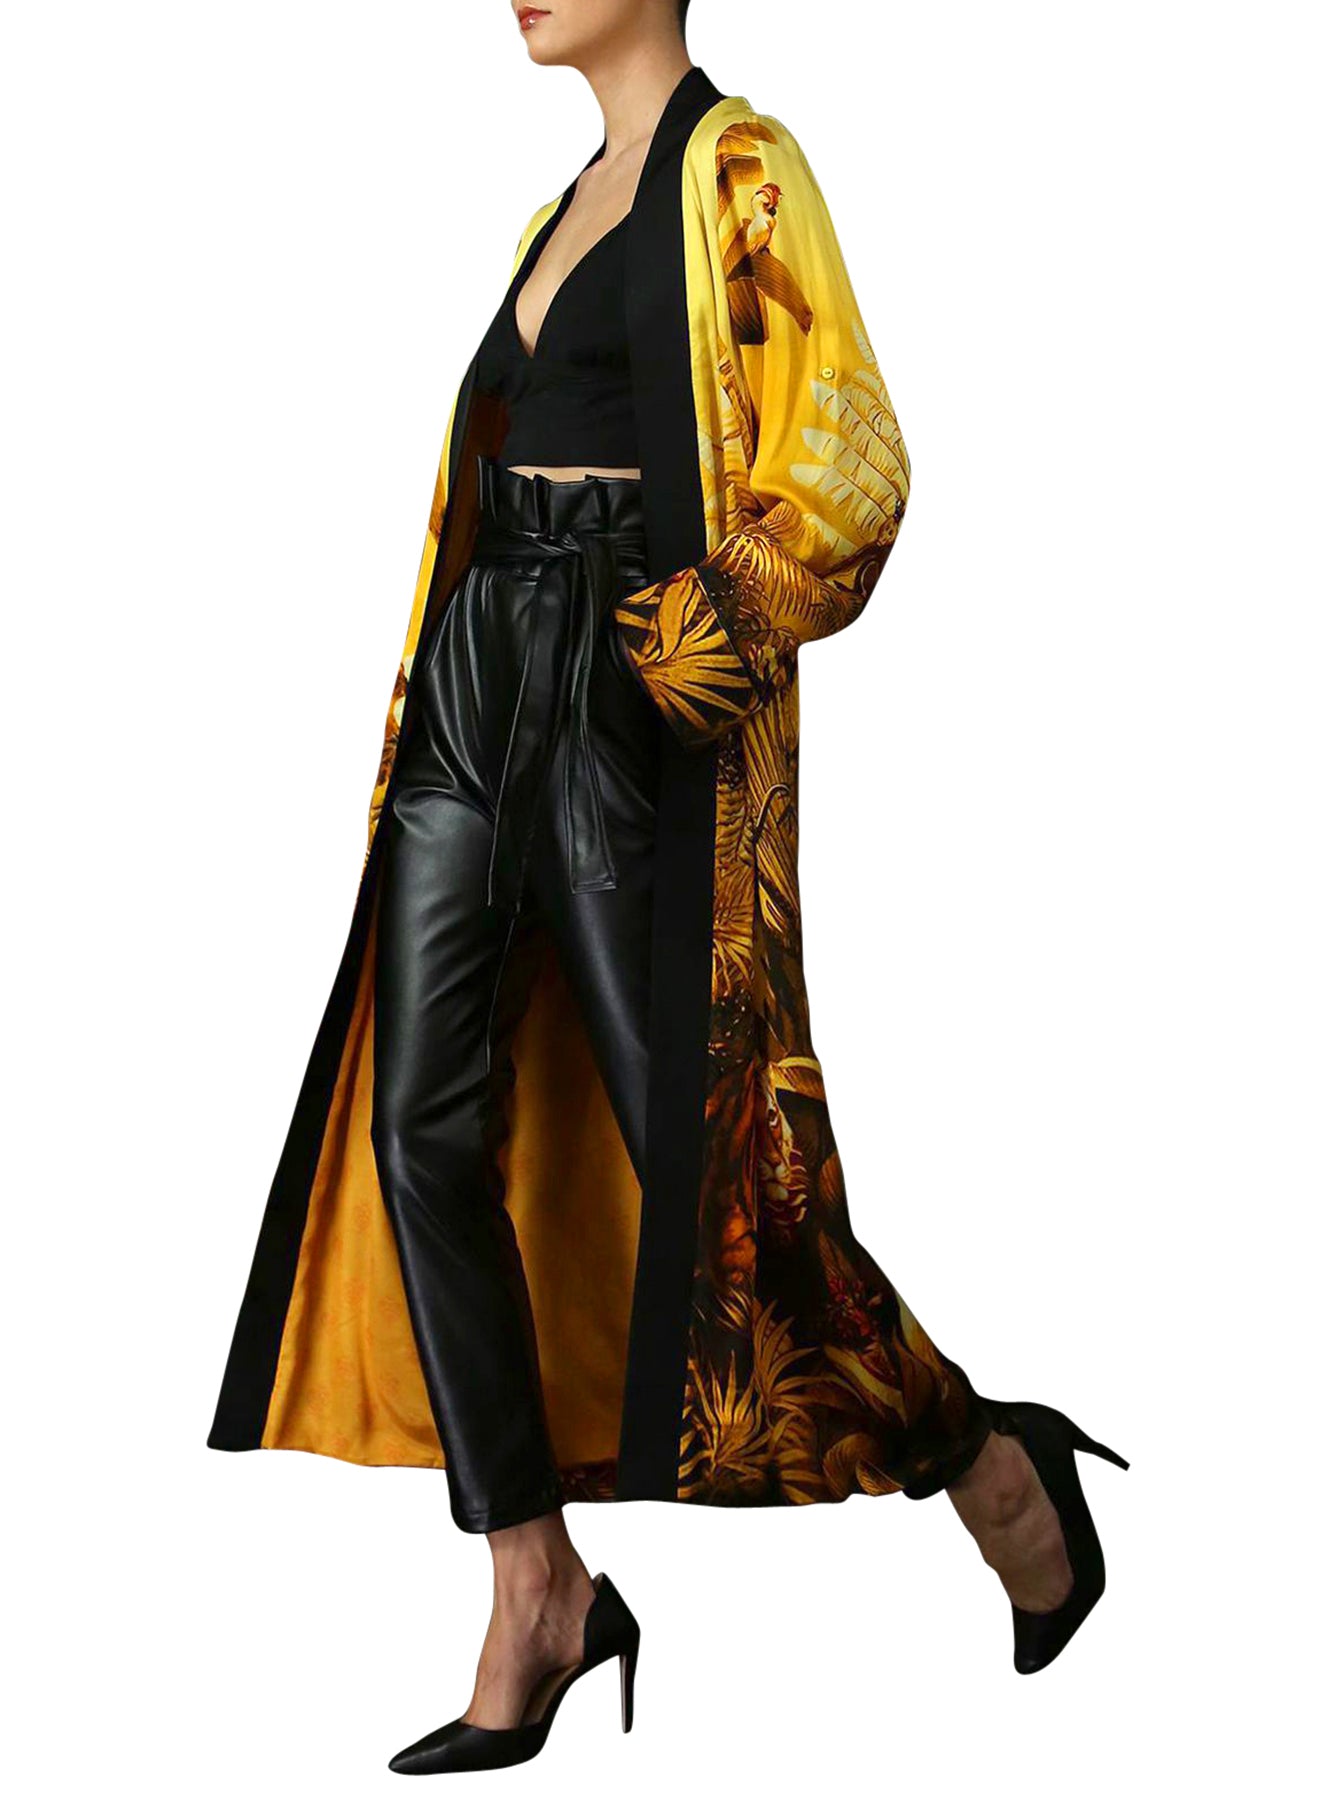 "Kyle X Shahida" "silk robes and kimonos" "silk robes for women" "plus size kimono" "silk yellow robe"